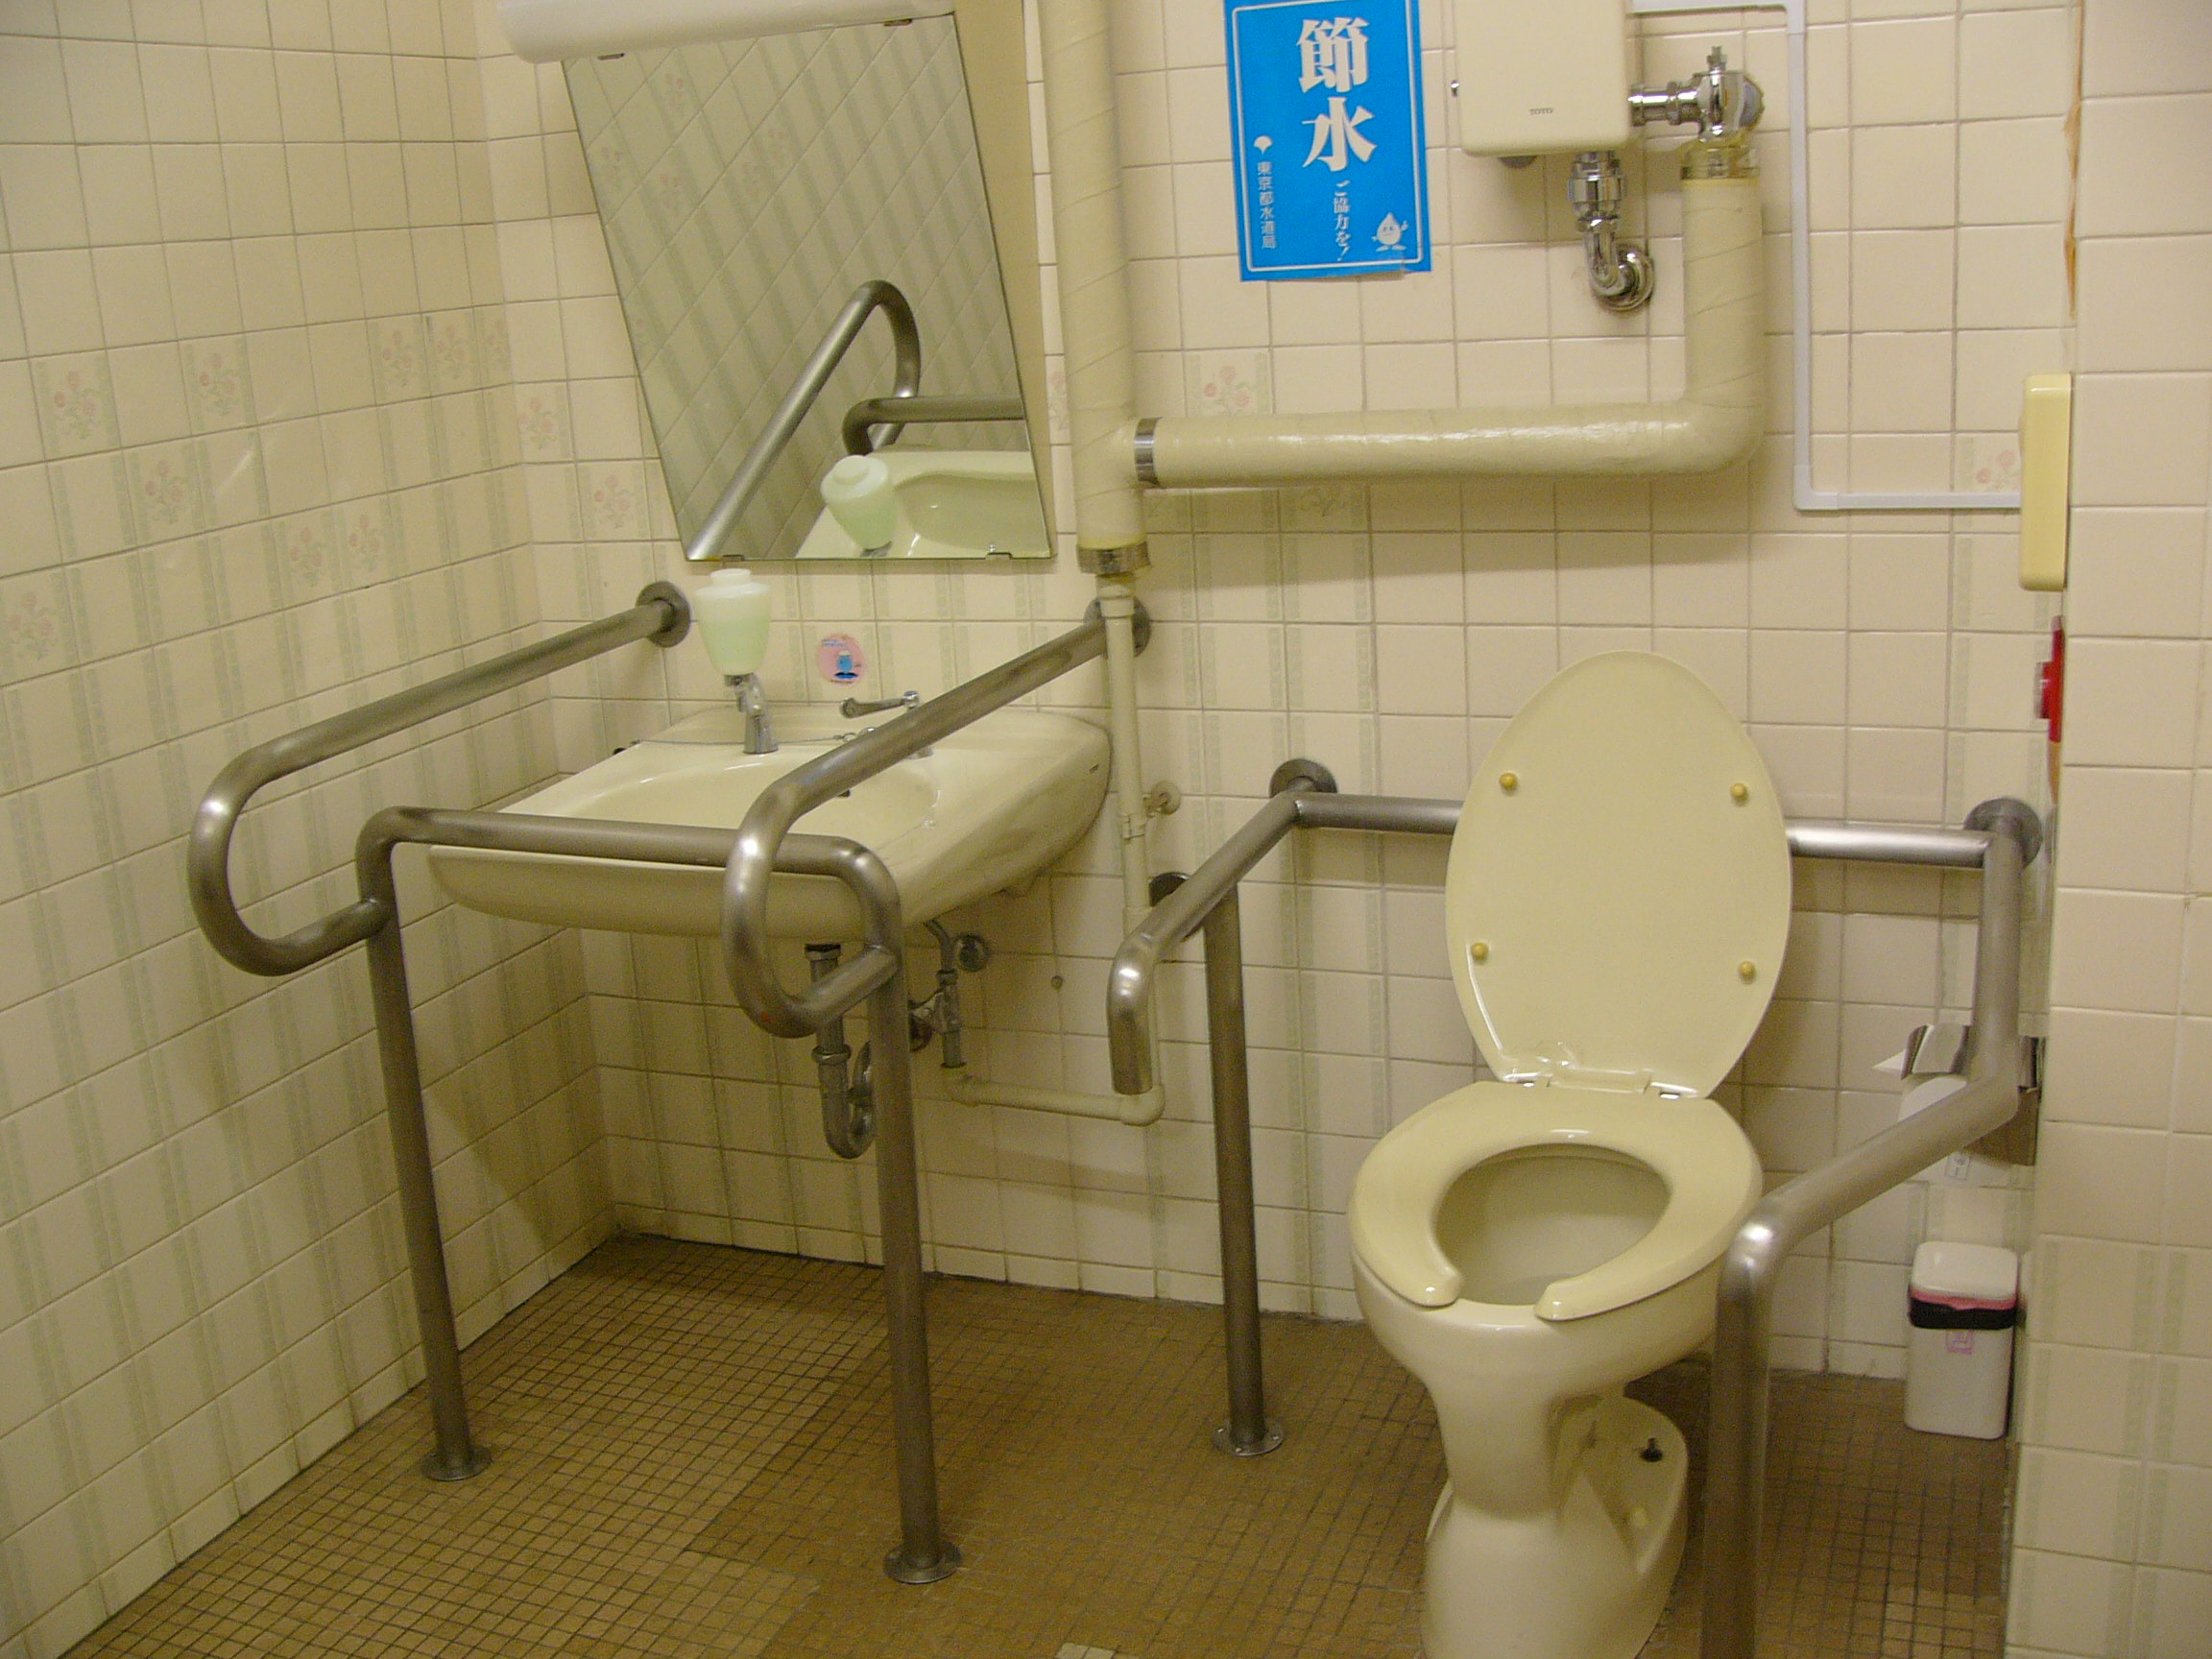 小平市西部市民センター 車イスで行けるトイレ情報サイト Yorisou ヨリソウ 利用者の方へ安心と優しさを届ける本物の情報を